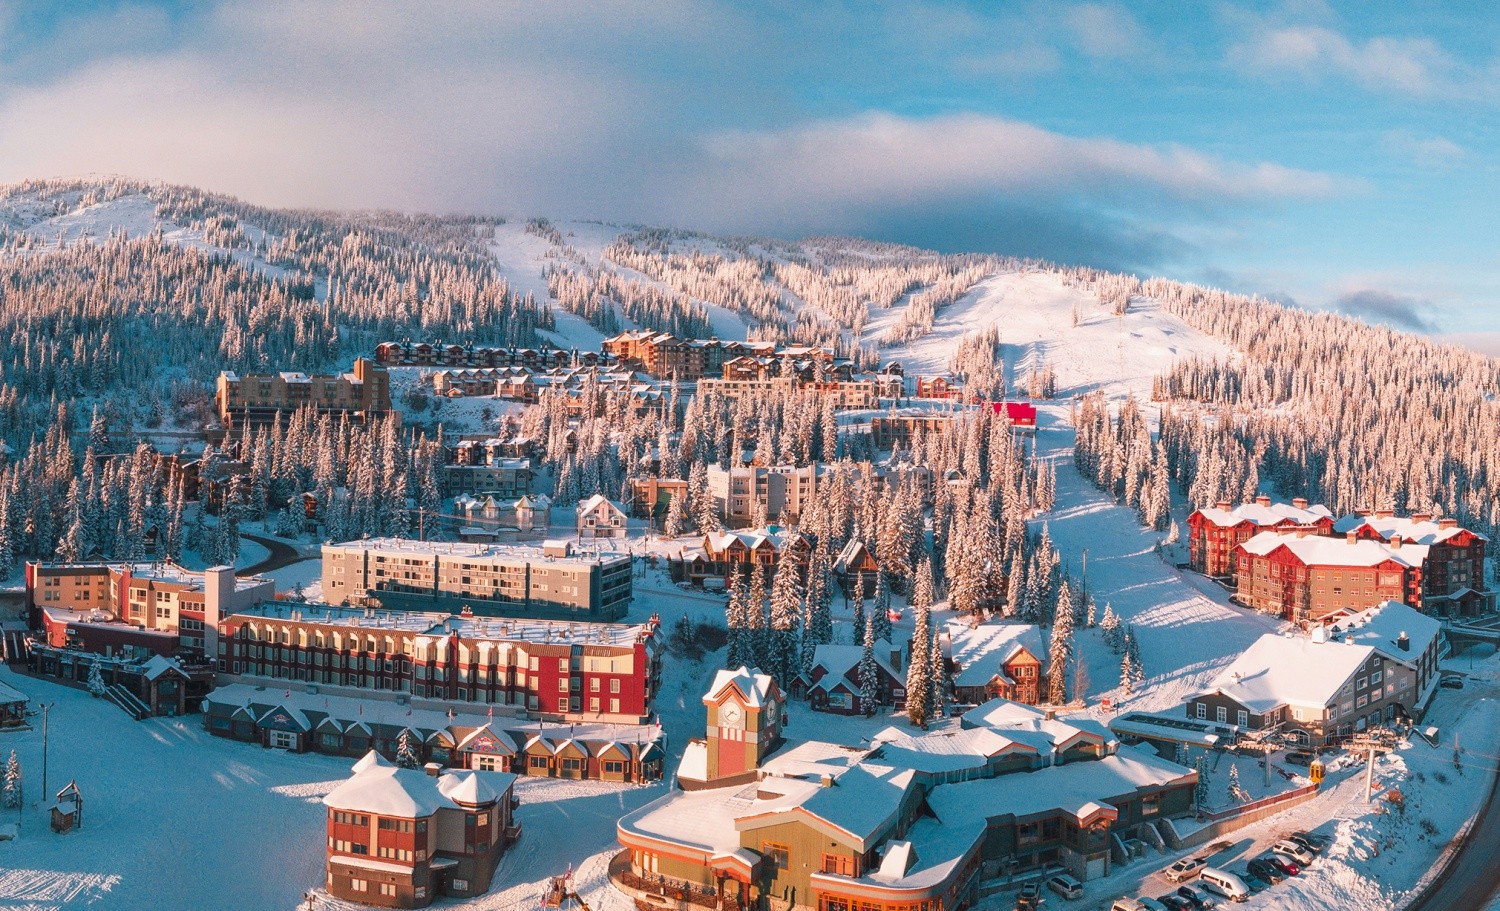 5. Big White Ski Resort - British Columbia